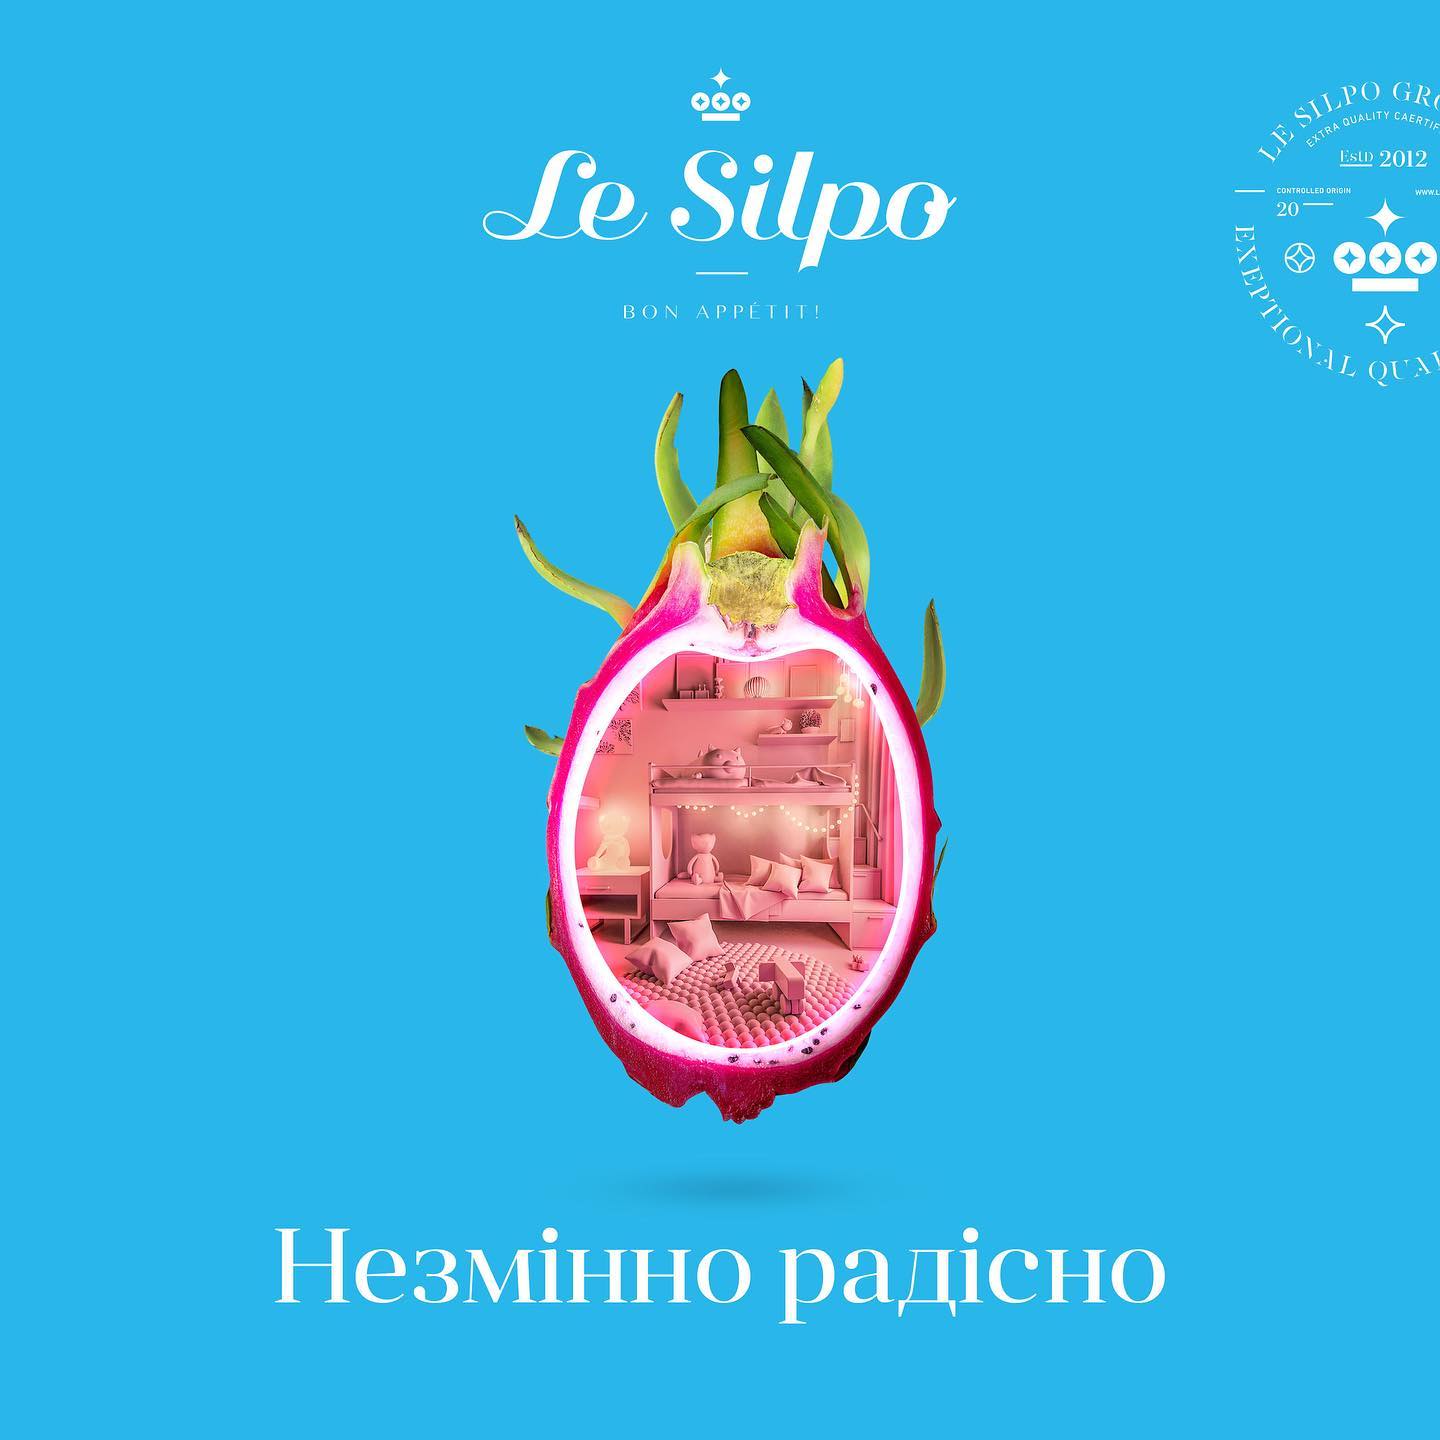 Le Silpo supermarkets campaign